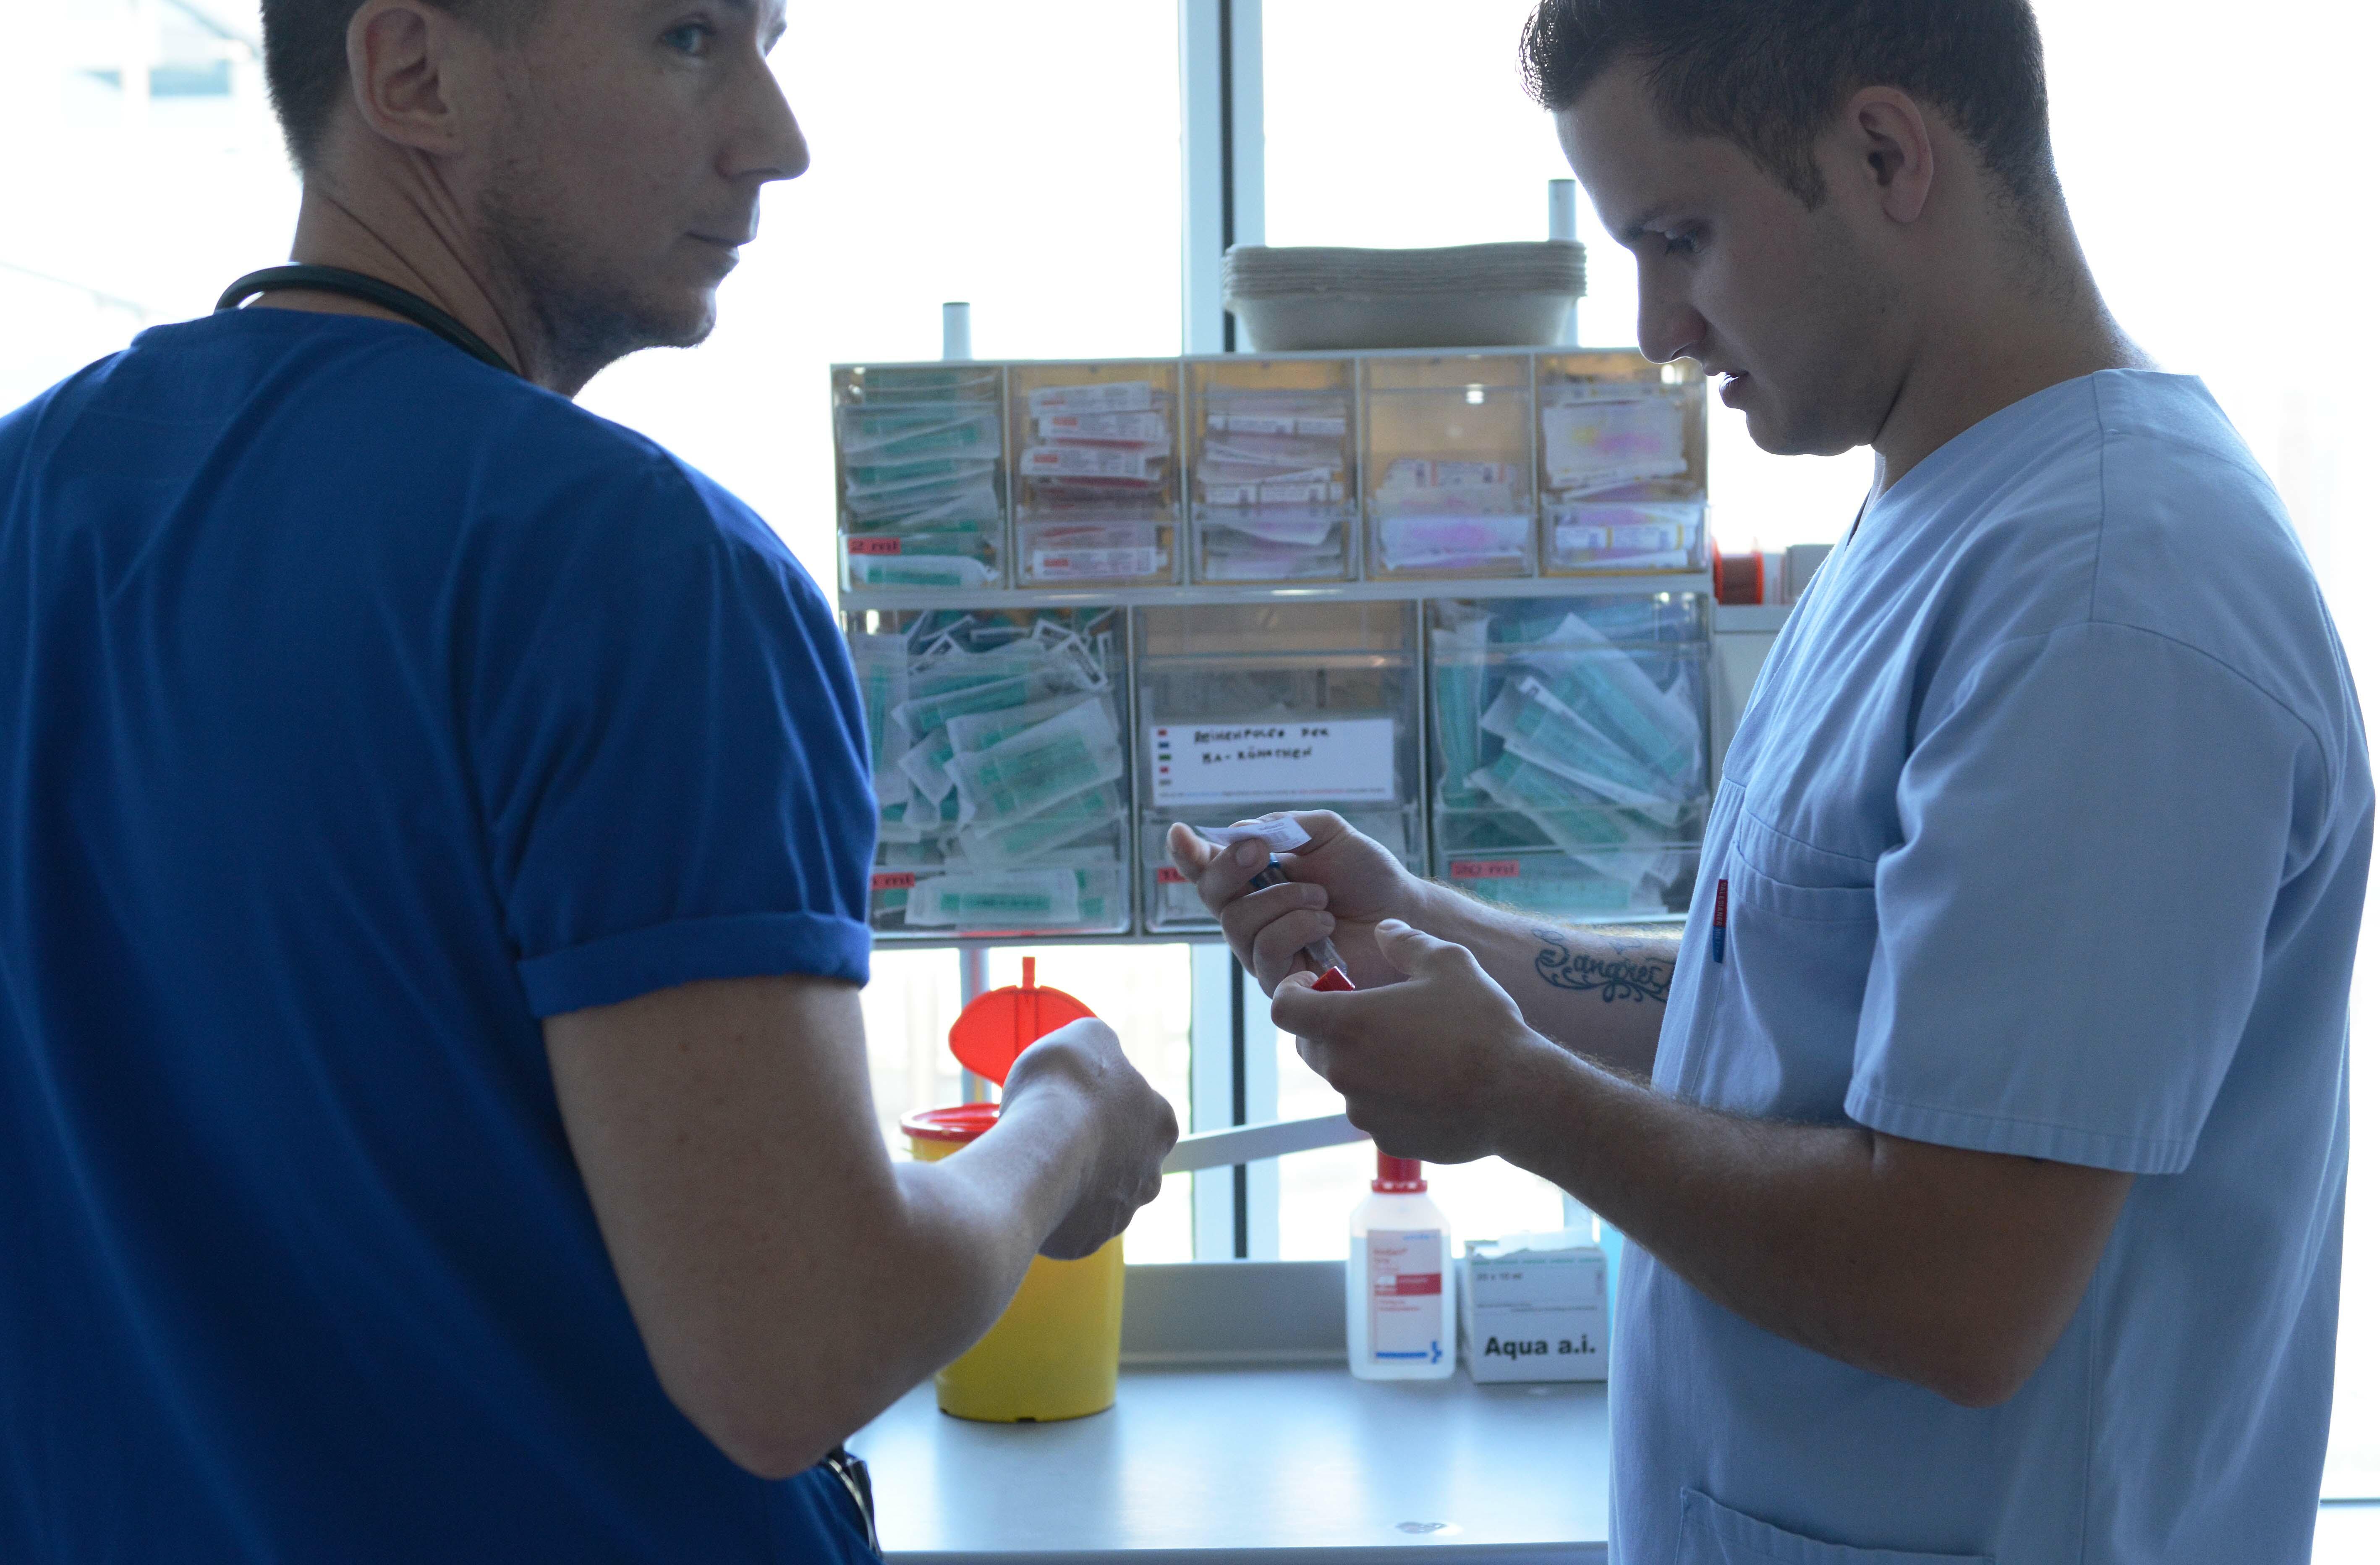 2 Pflegekräfte stehen vor einem durchsichtigen Aufbewahrungskästchen für Spritzen und Kanülen. Der jüngere Mann hält 2 Blutabnahmeröhrchen und ein Etikett in der Hand.